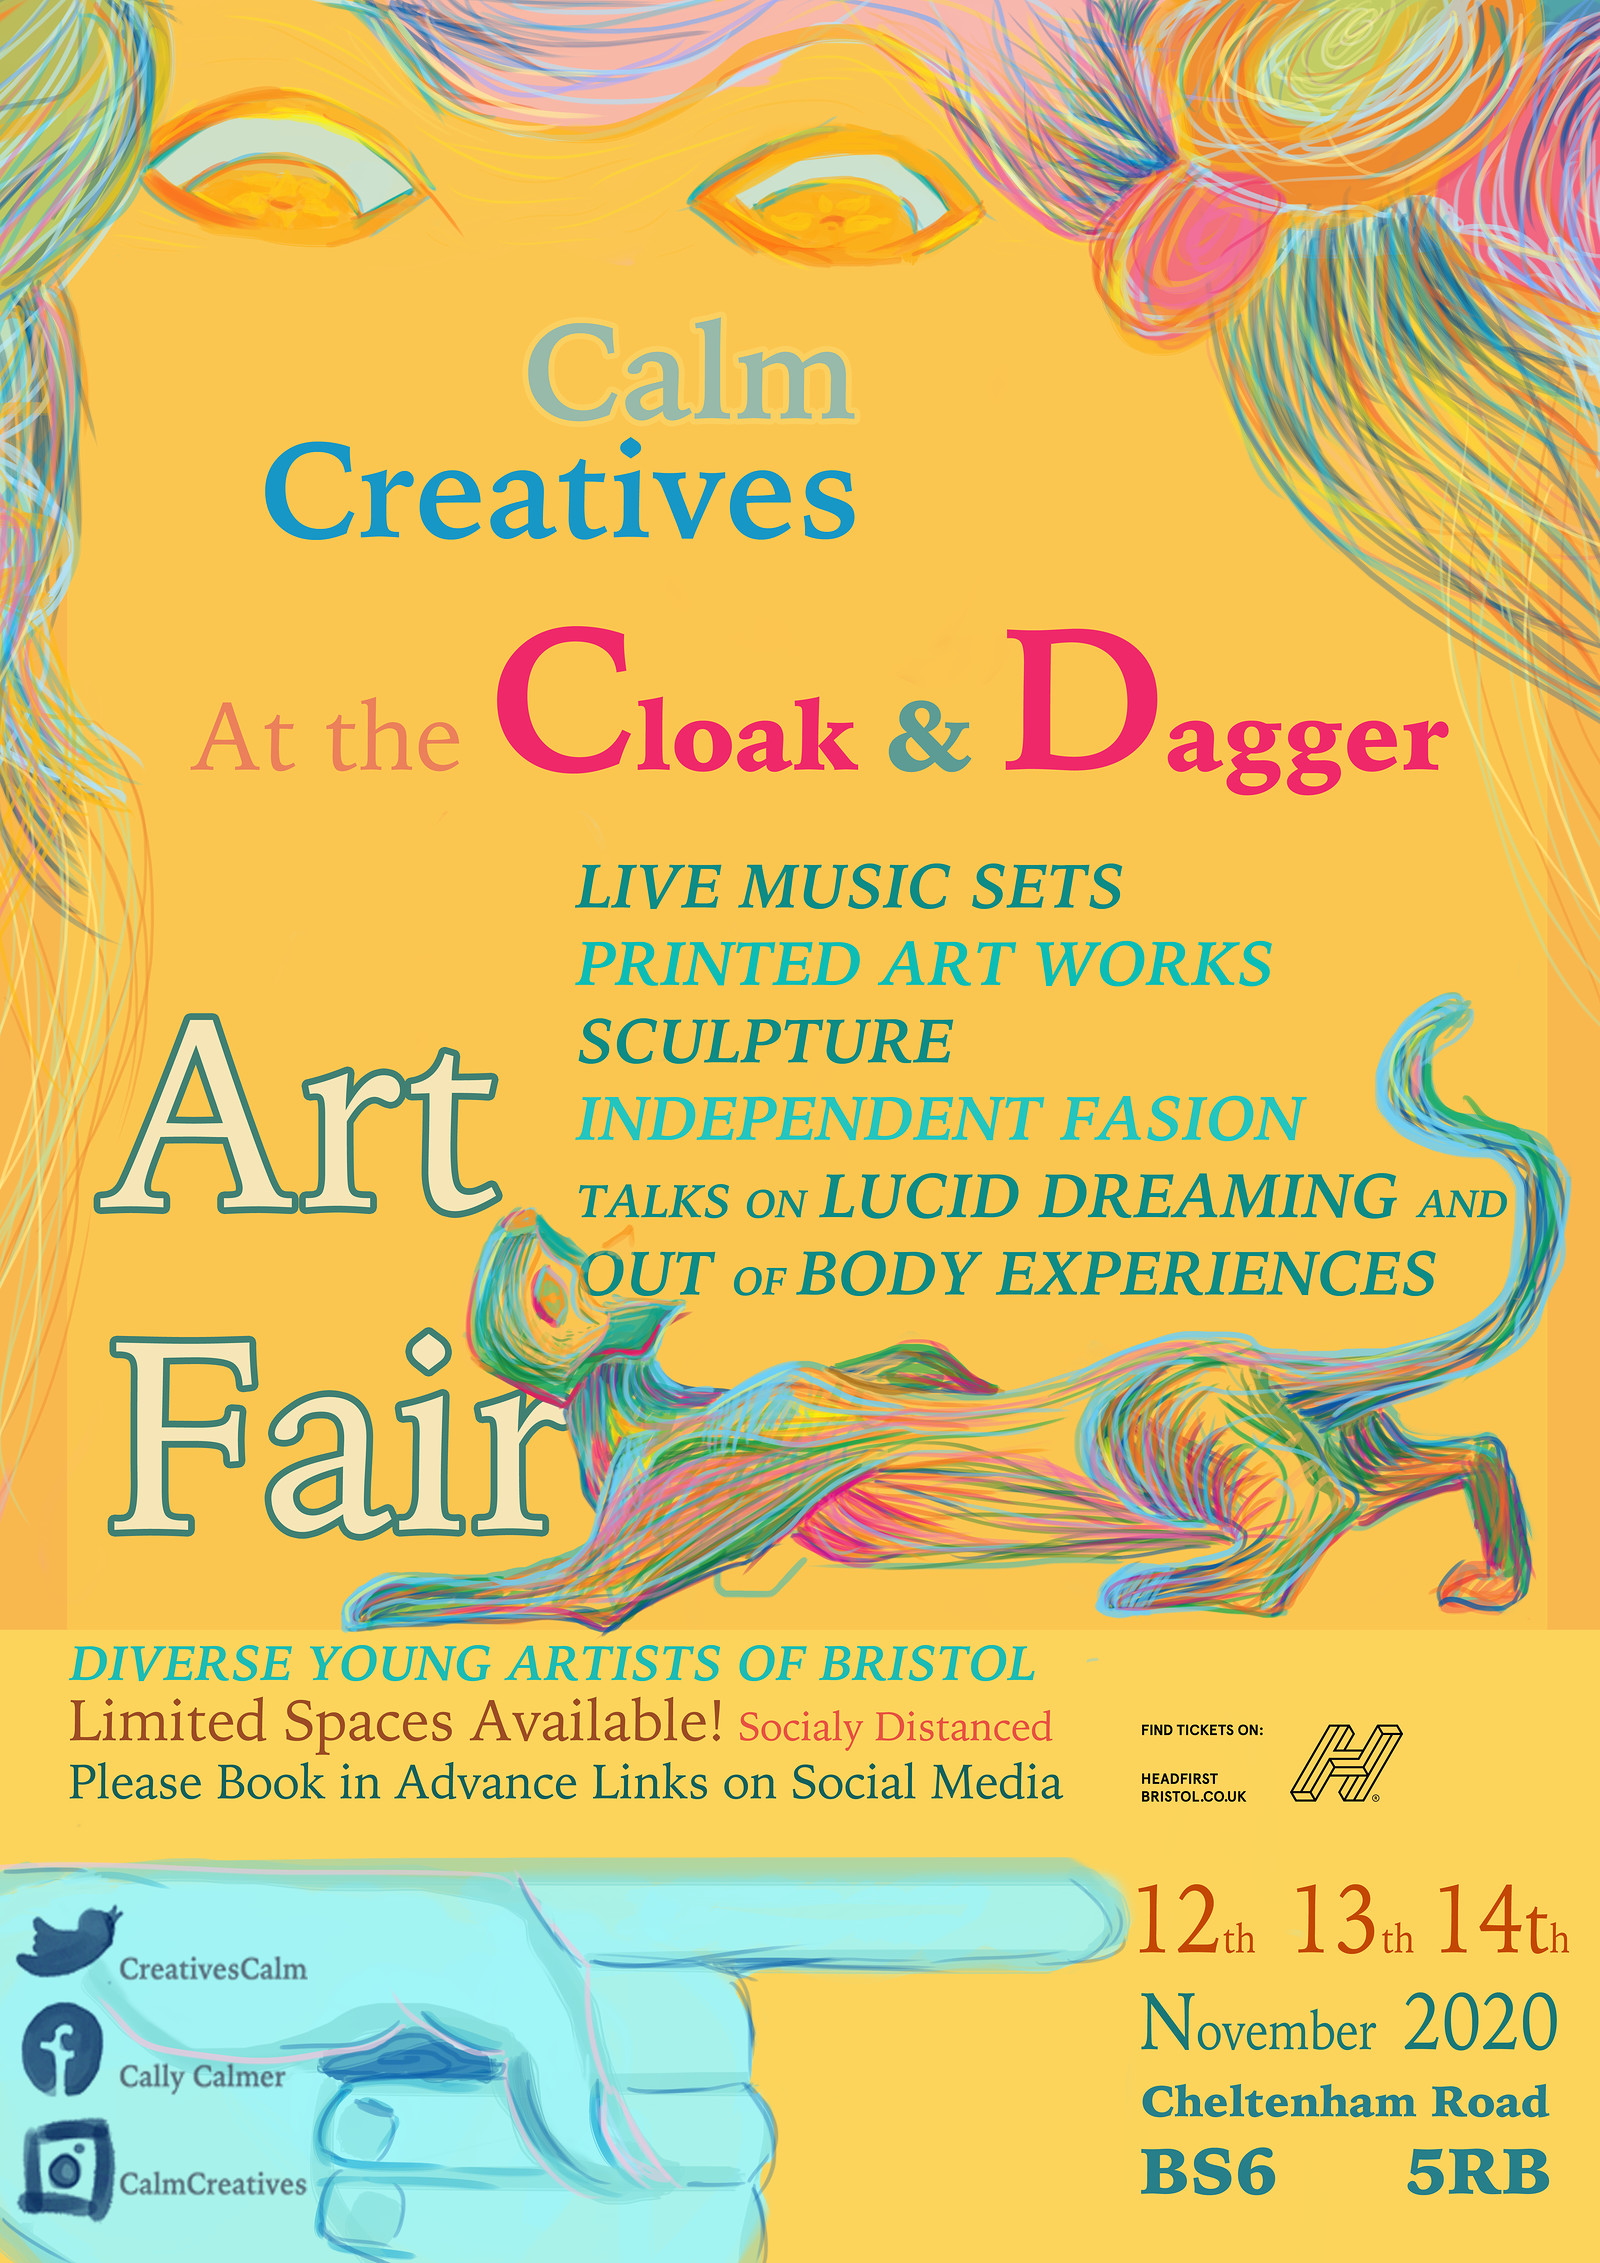 The Calm Creatives Art Fair at The Cloak and Dagger